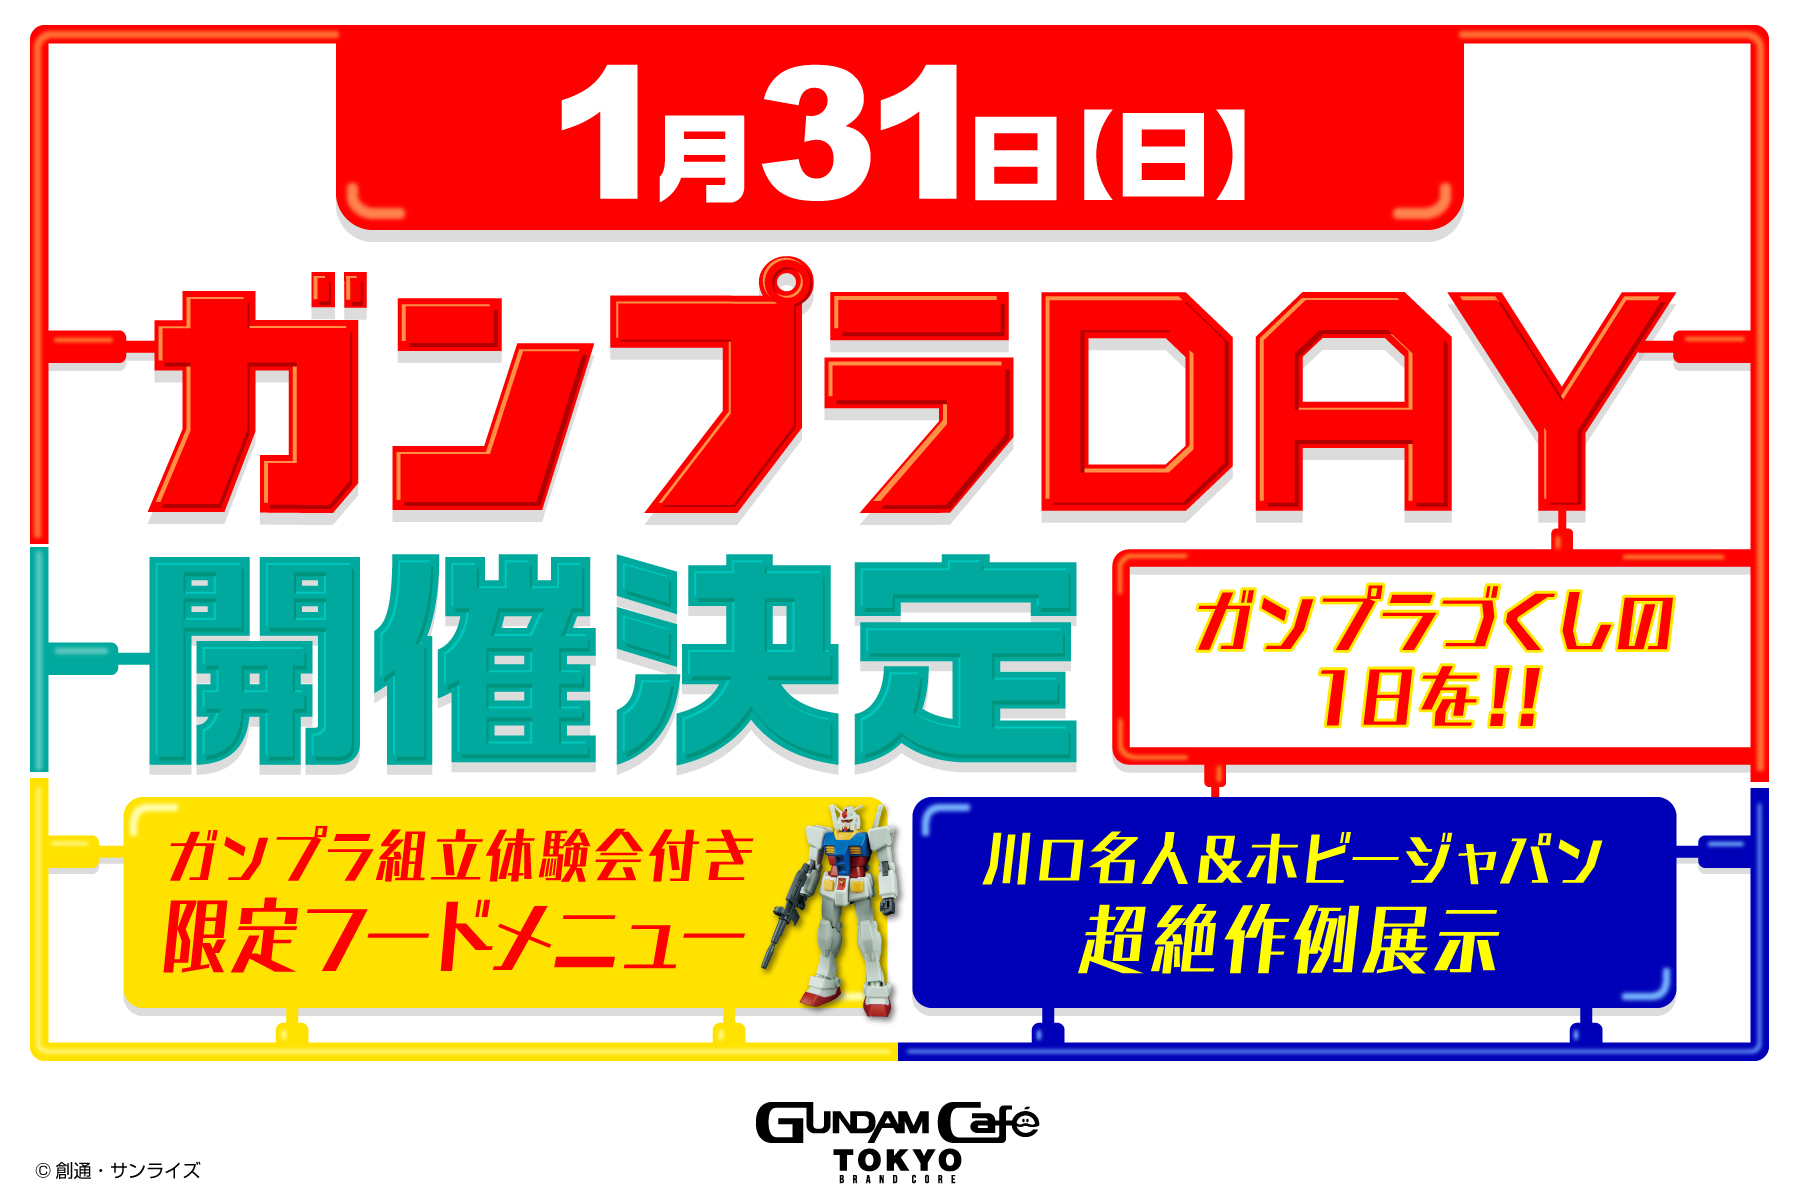 ガンダムのオフィシャルカフェ Gundam Cafe Tokyo Brand Core にて ガンプラday 1月31日開催 Hobby Watch